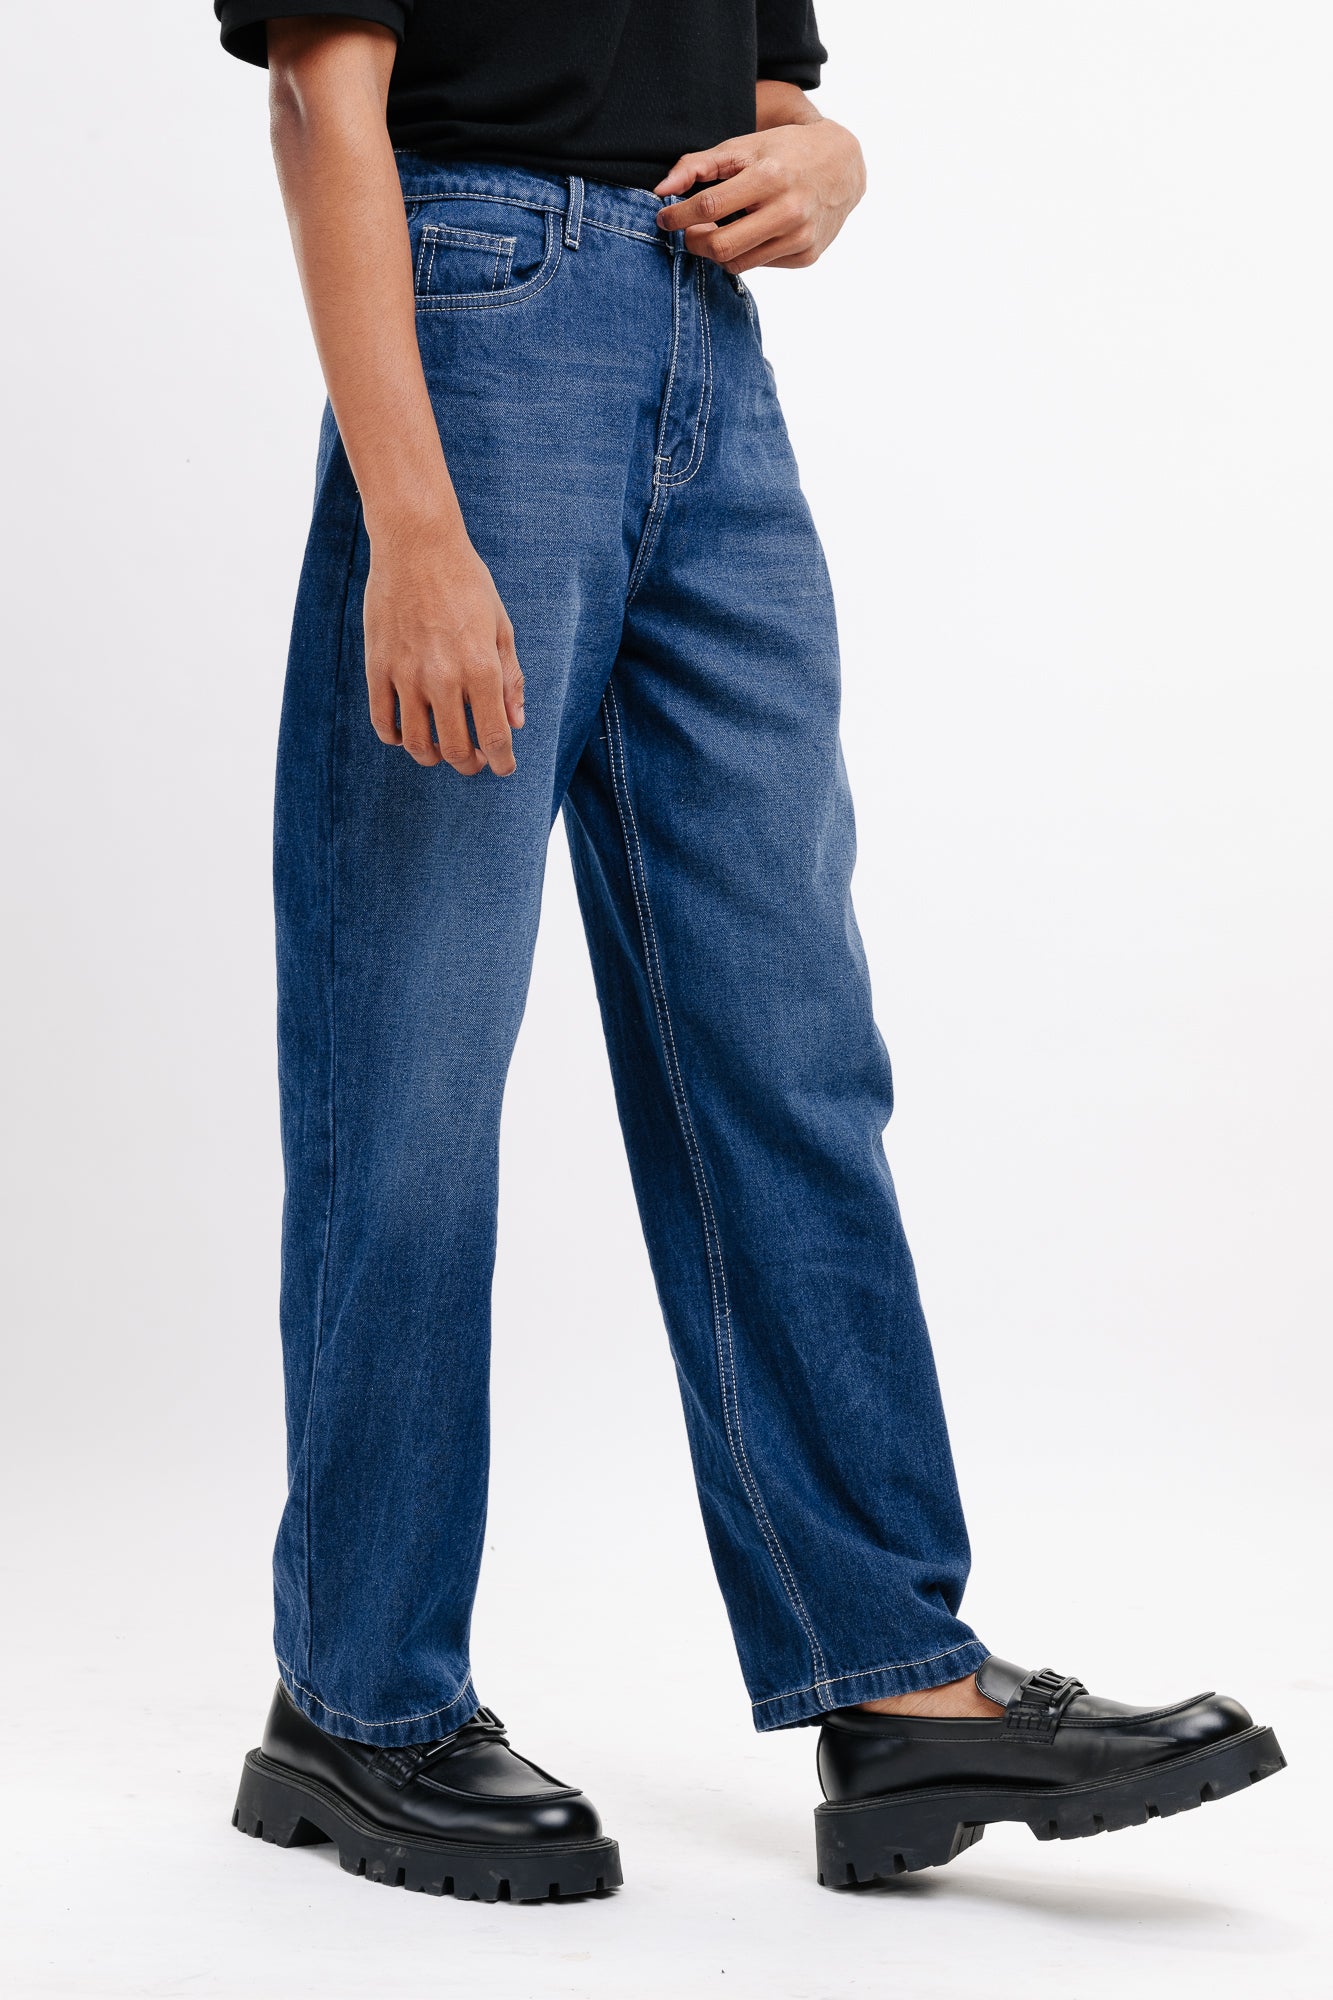 Basic straight men's jeans